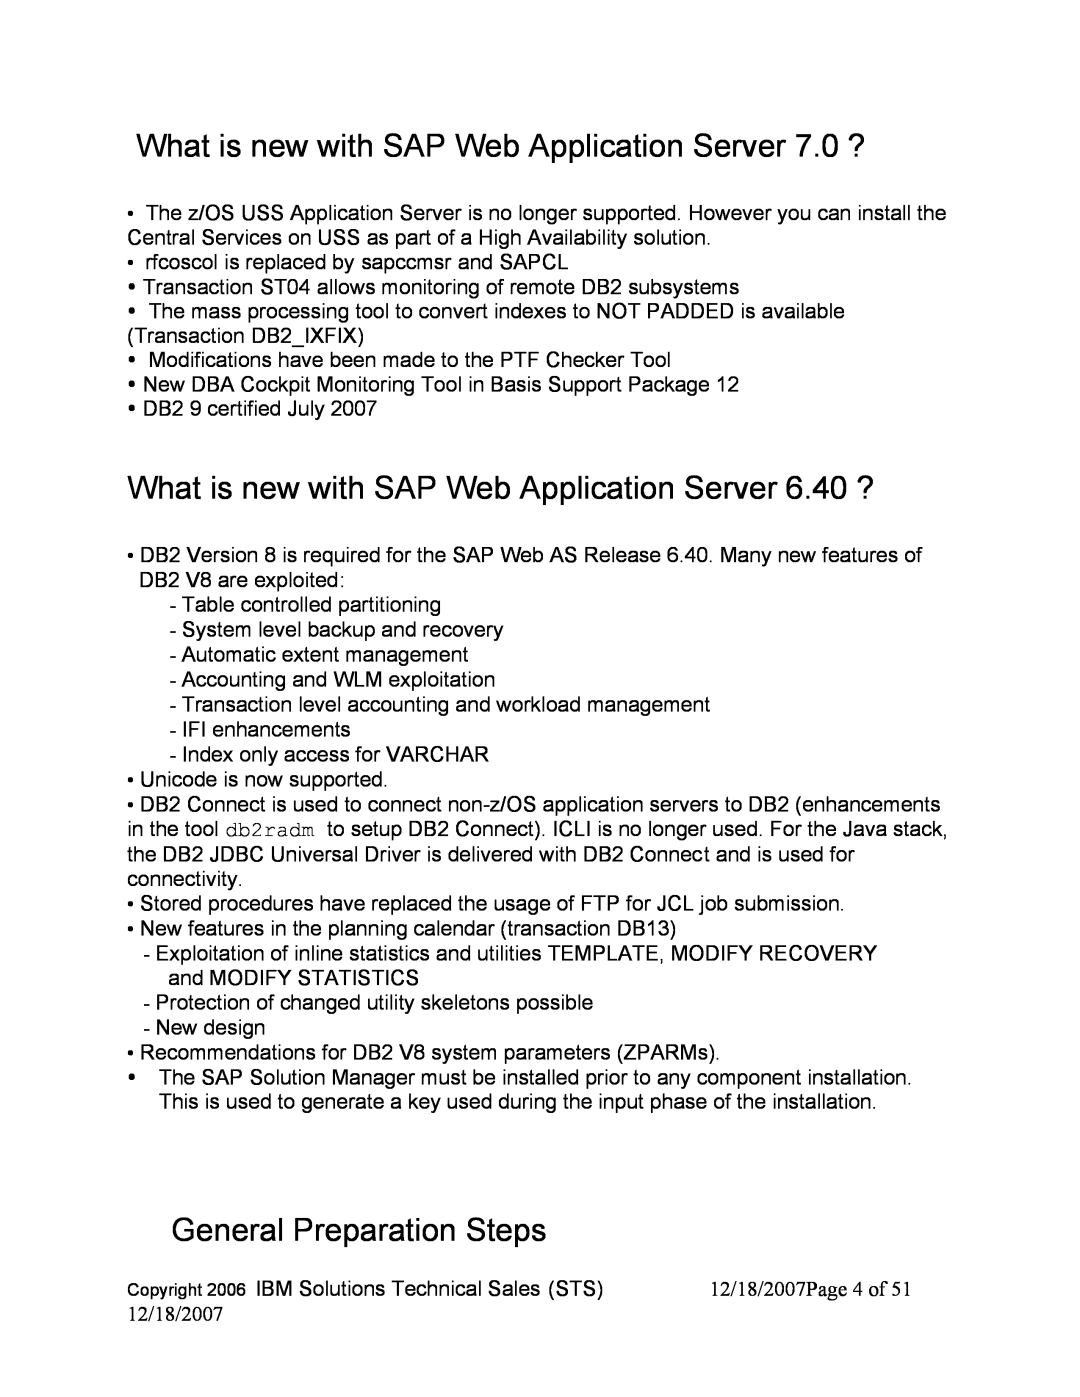 IBM DB2 9, DB2 V8 manual What is new with SAP Web Application Server 7.0 ?, General Preparation Steps 